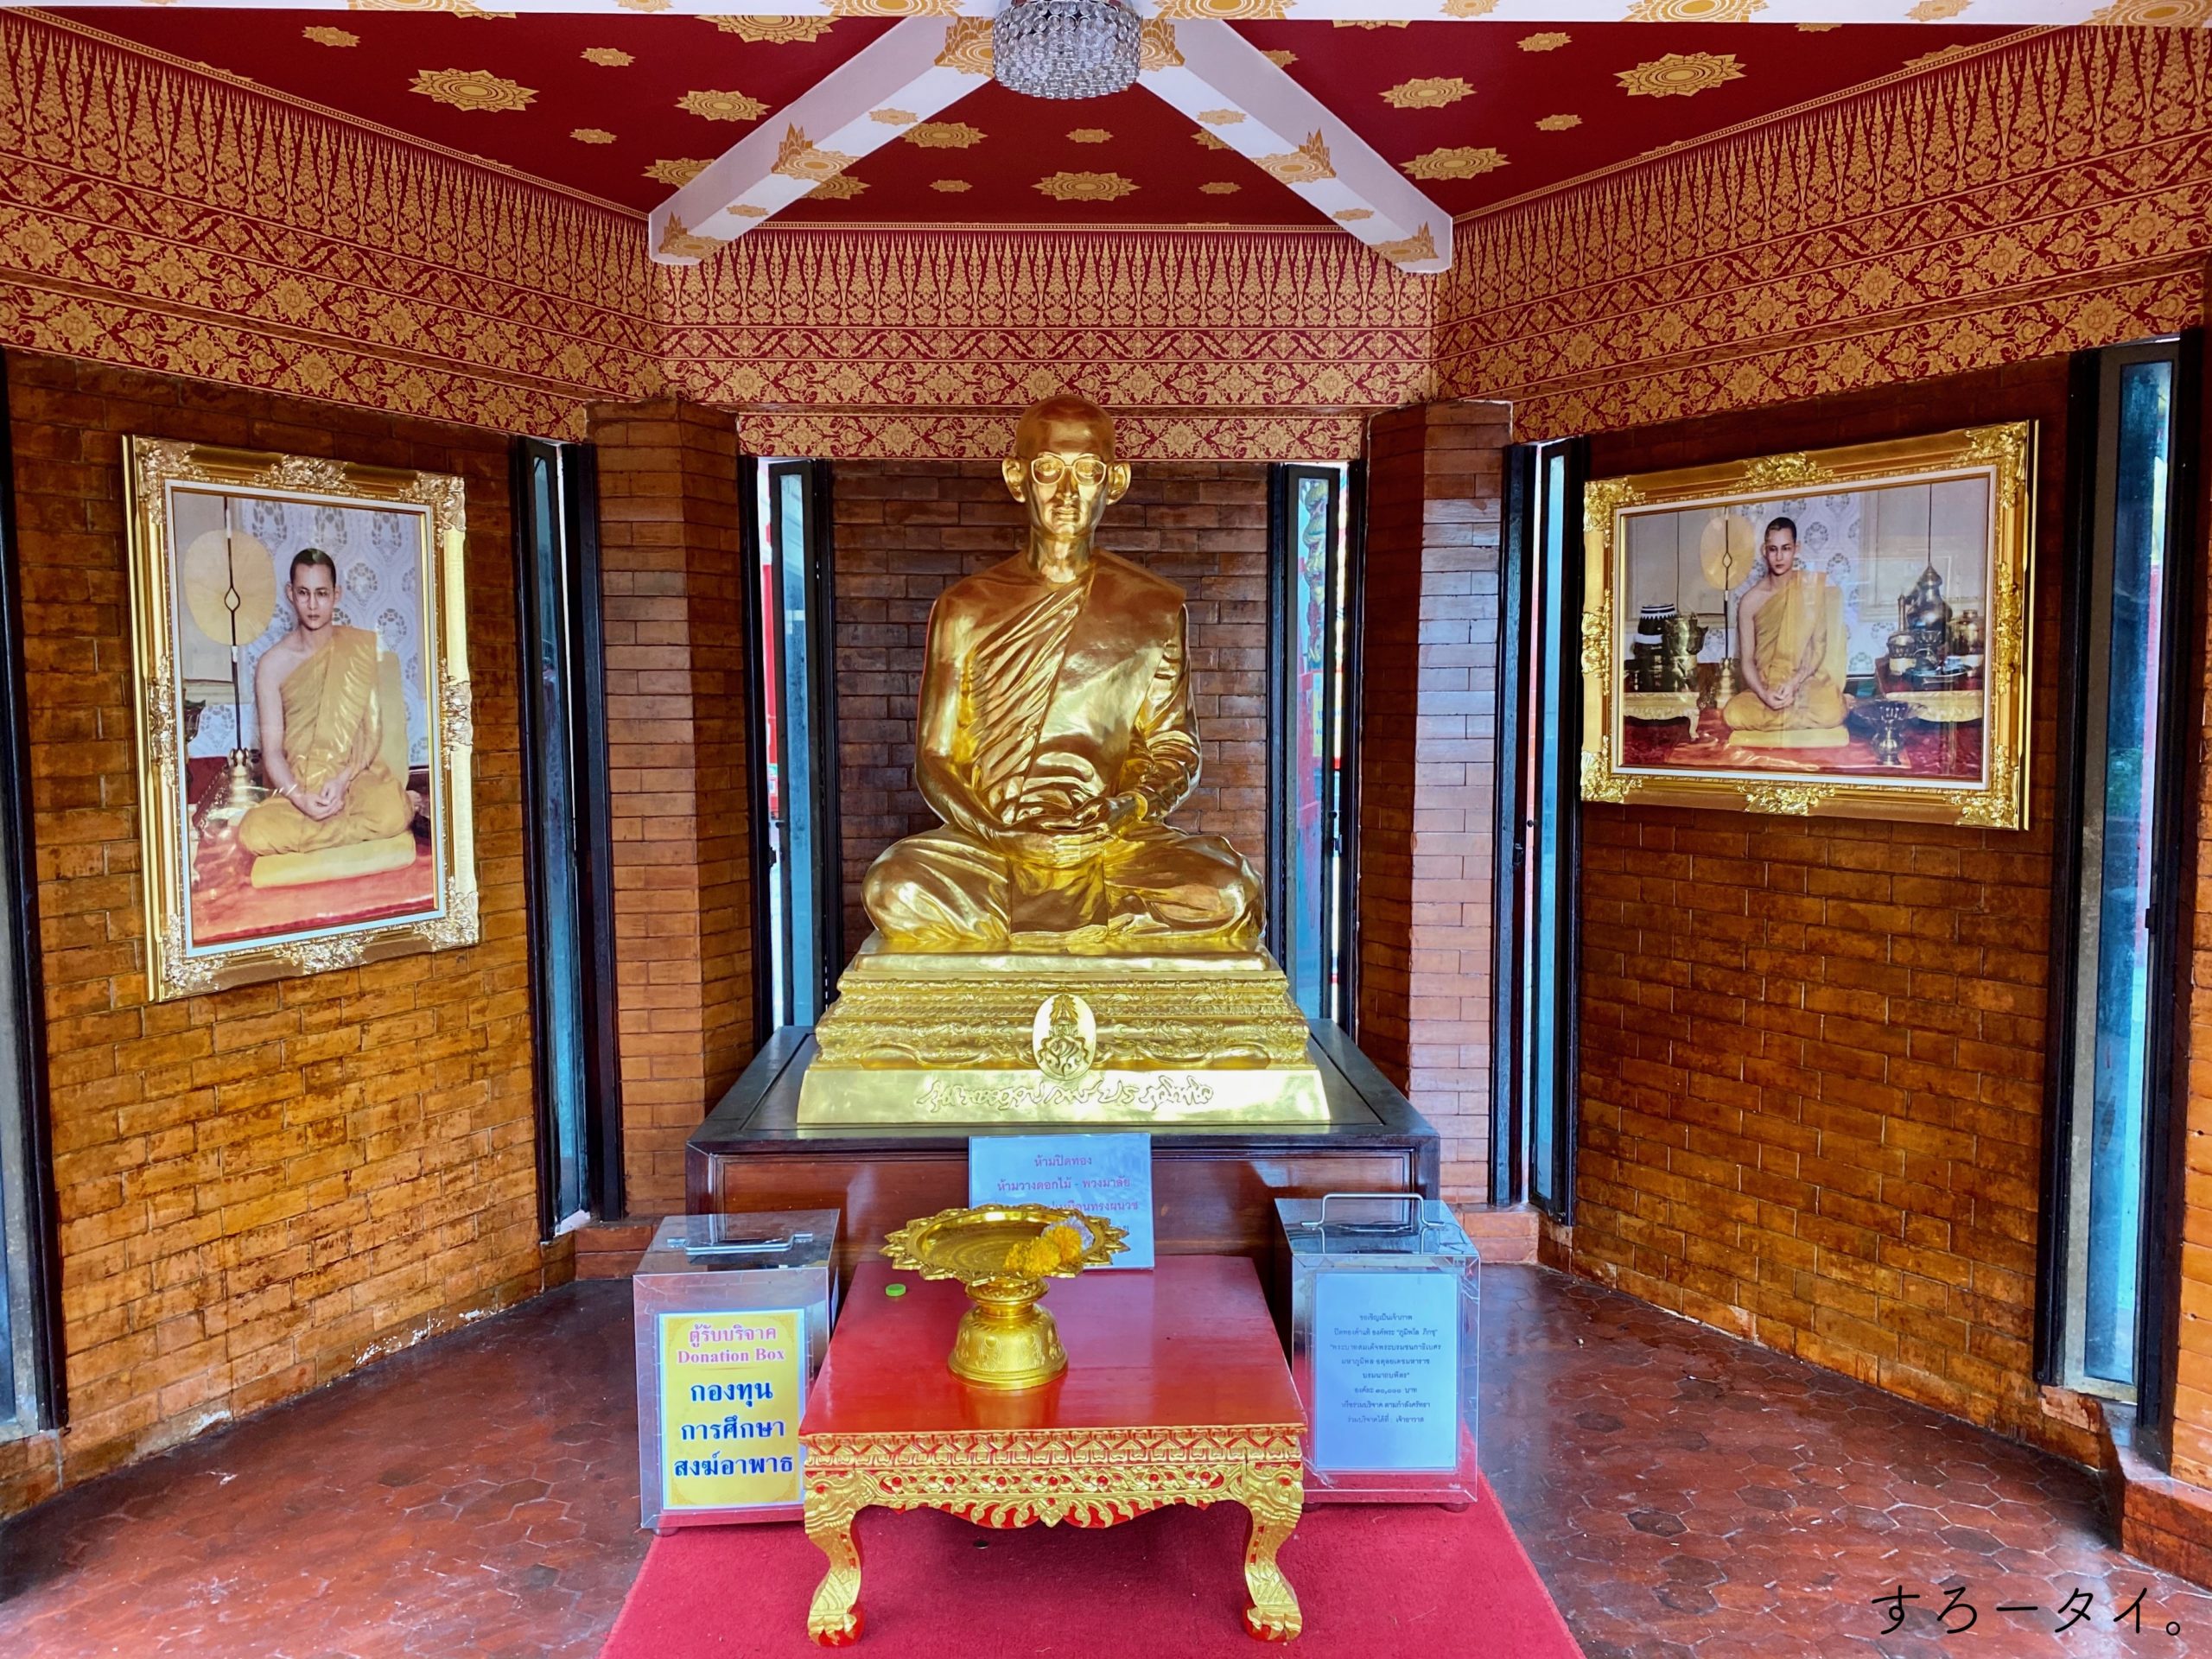 ワット インタラウィハーン プラアーラームルアン　Wat Intharawihan วัดอินทรวิหาร พระอารามหลวง